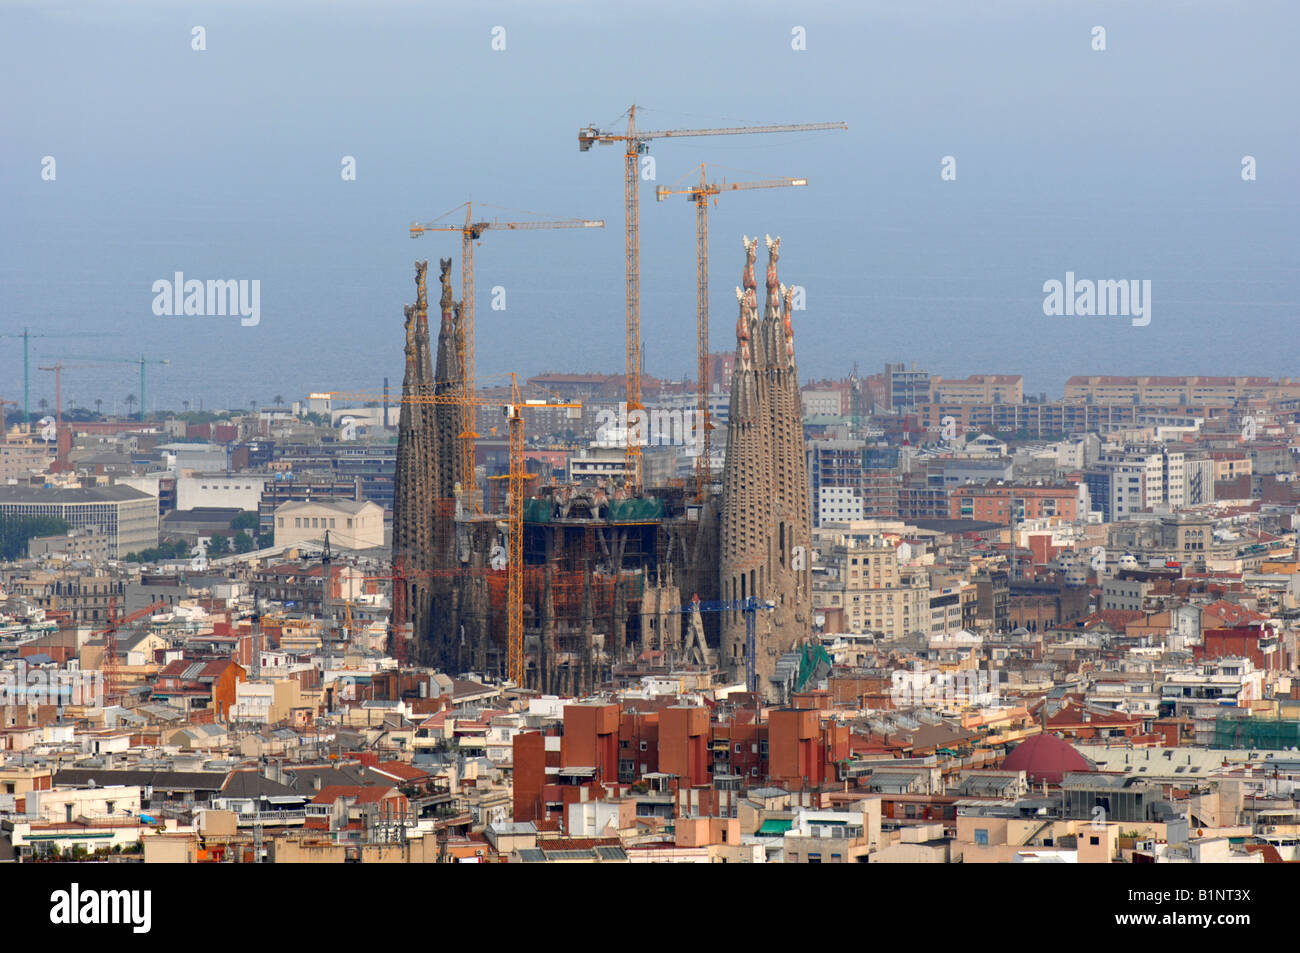 La cathédrale Sagrada Familia, Barcelone, Espagne Banque D'Images